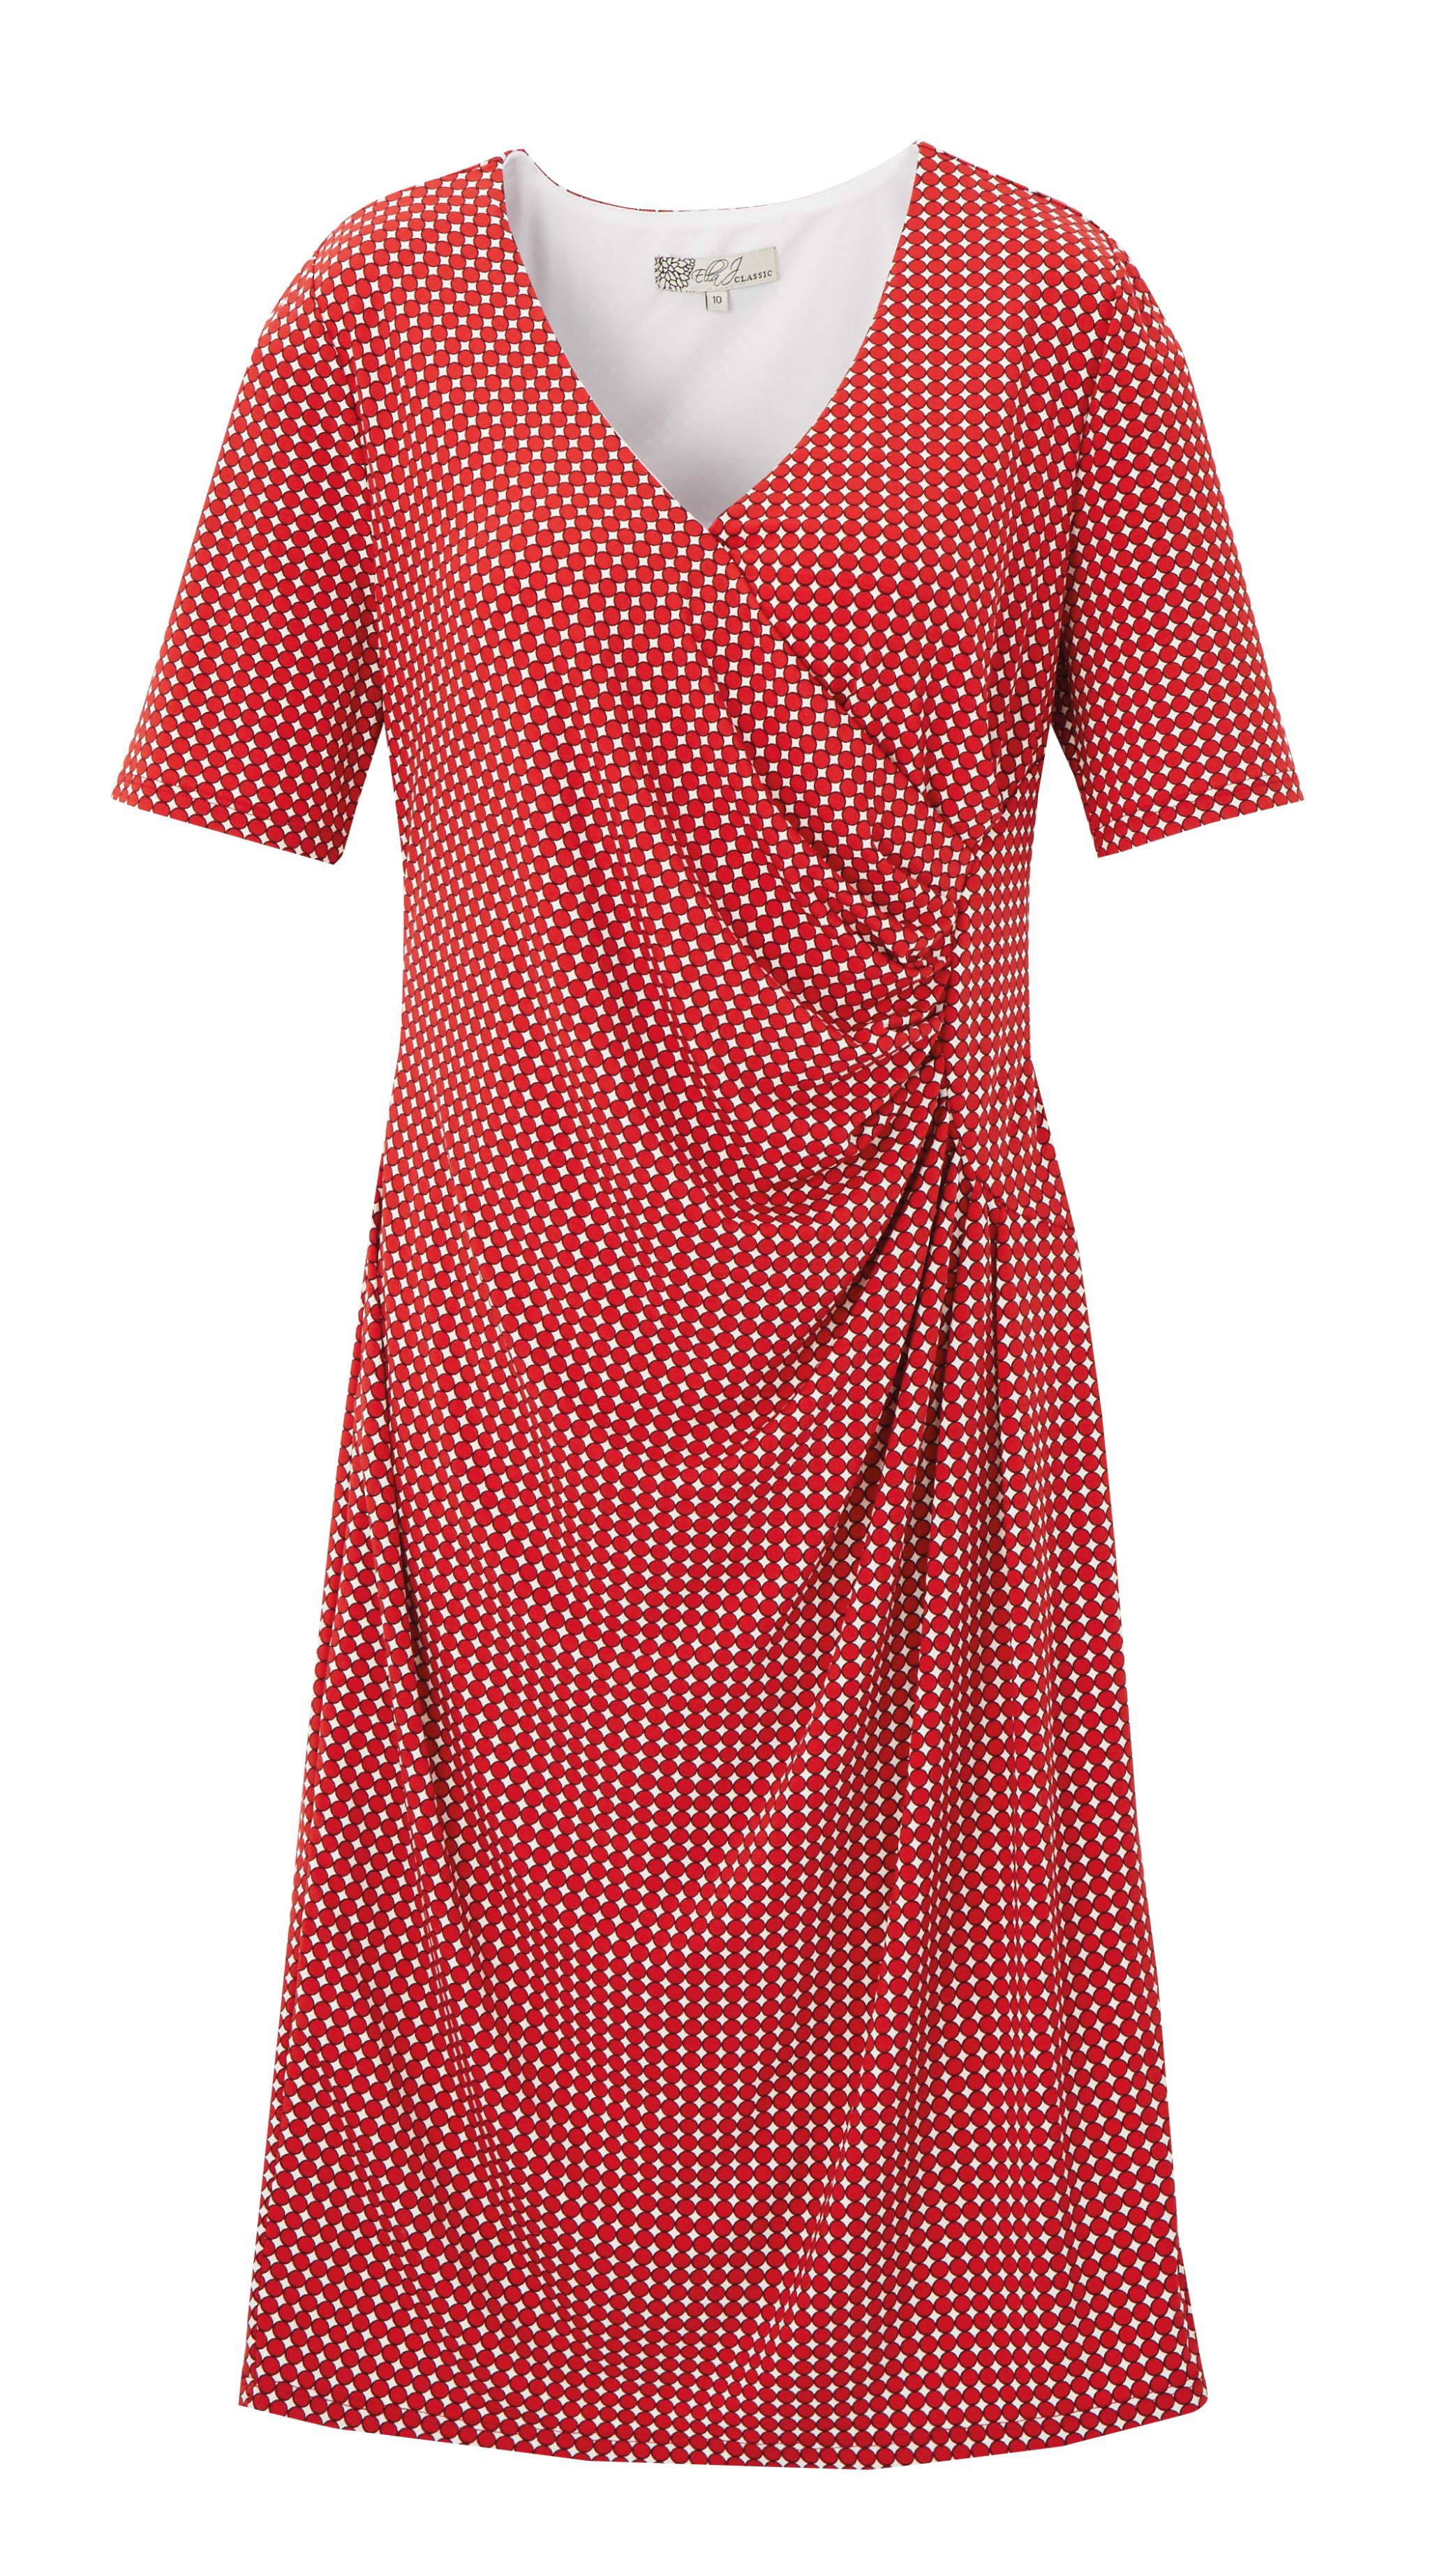 6085289 Ella J Classic Dryknit Polka Dot Print Panelled Dress Rust $89.99 Instore 1 Mar 2016